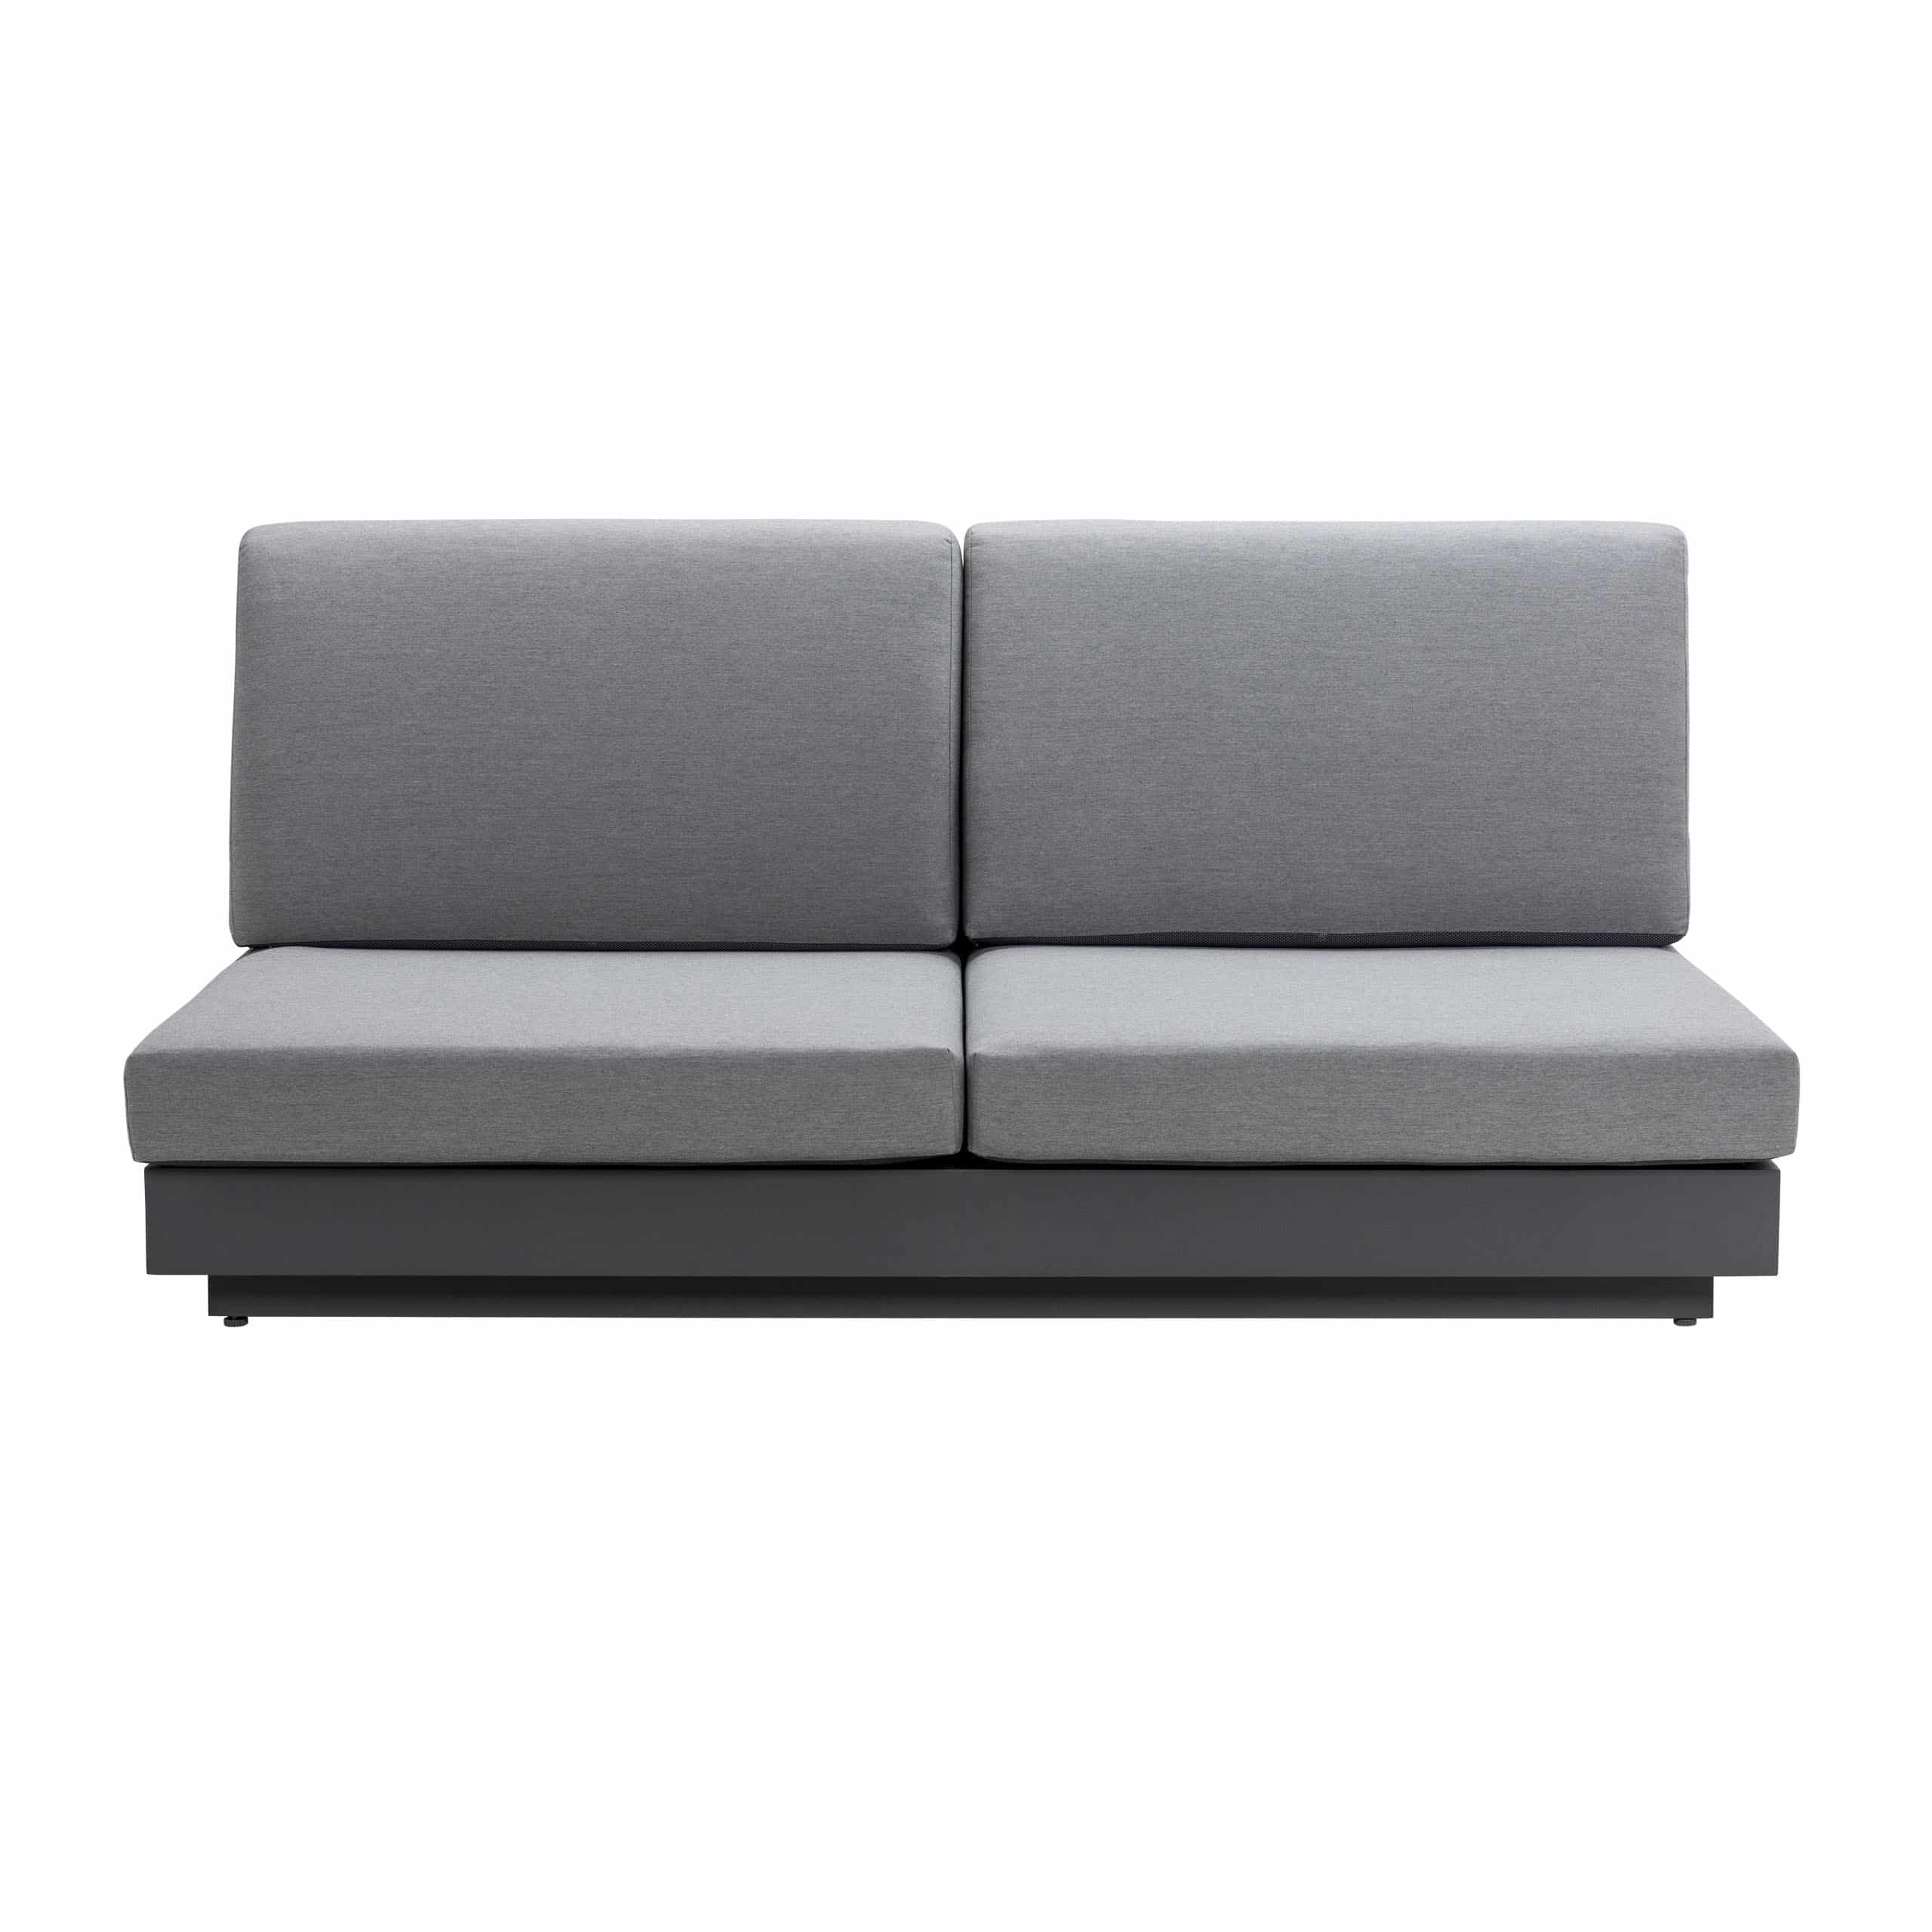 Crete Aluminium Outdoor 2-Seater Sofa (Charcoal)